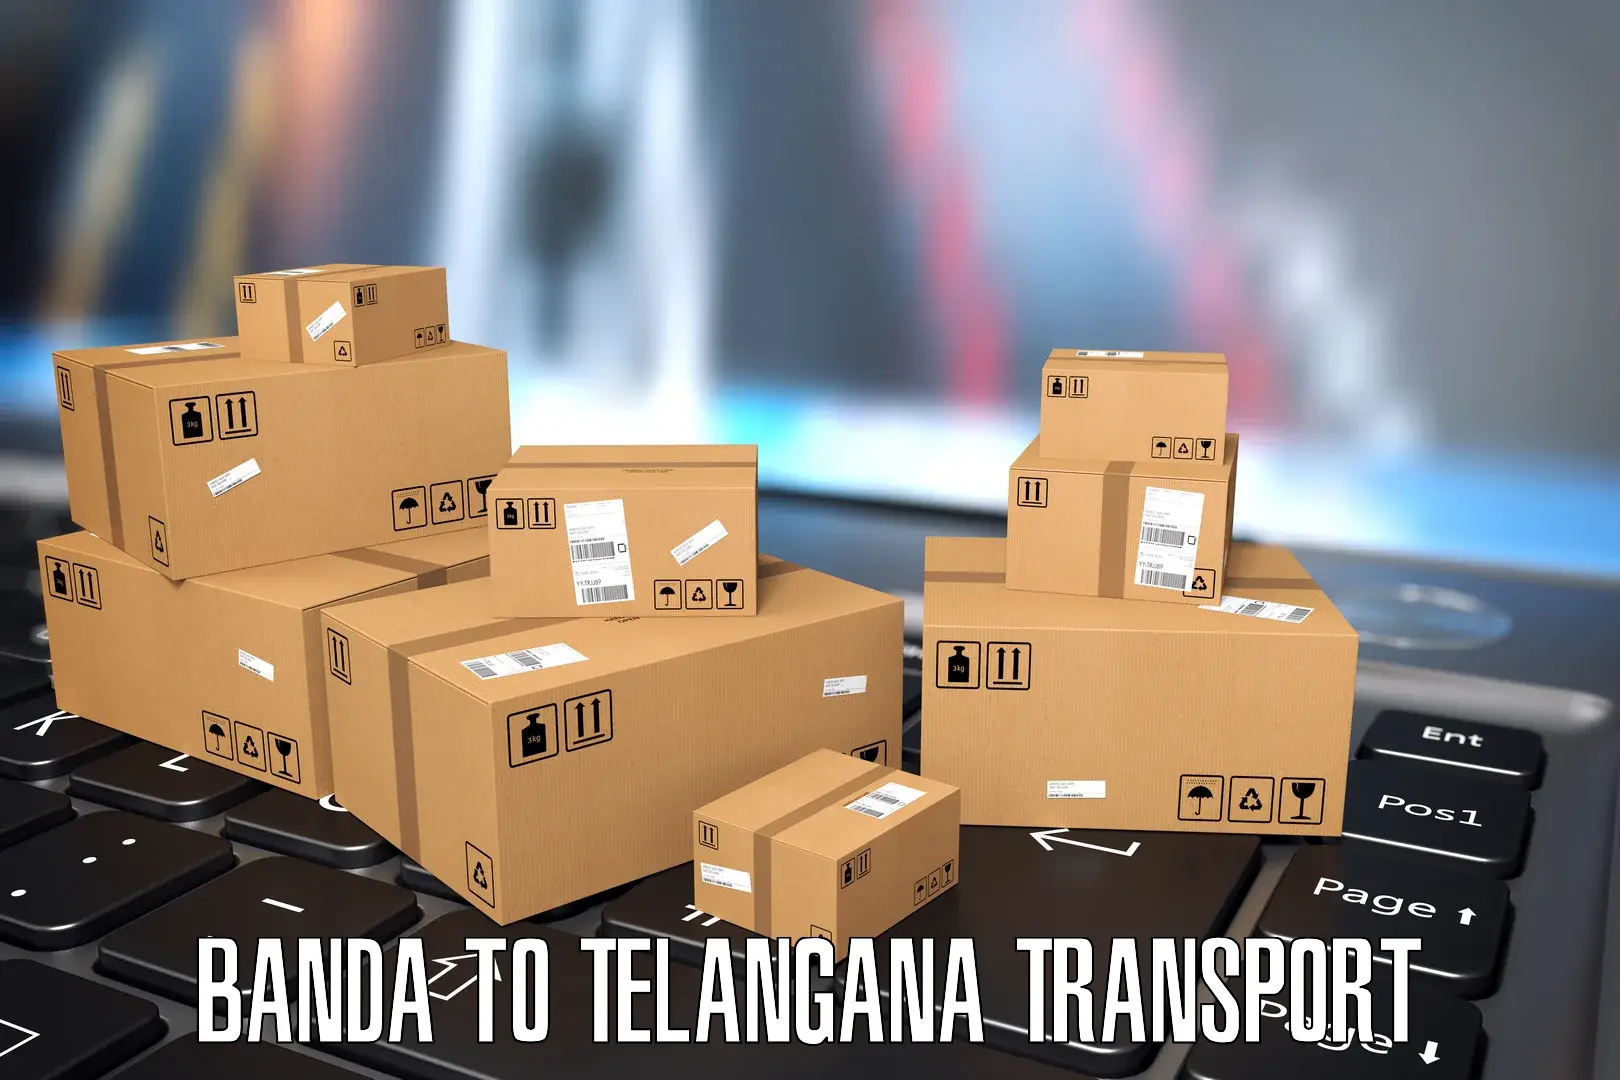 Pick up transport service Banda to Vemulawada